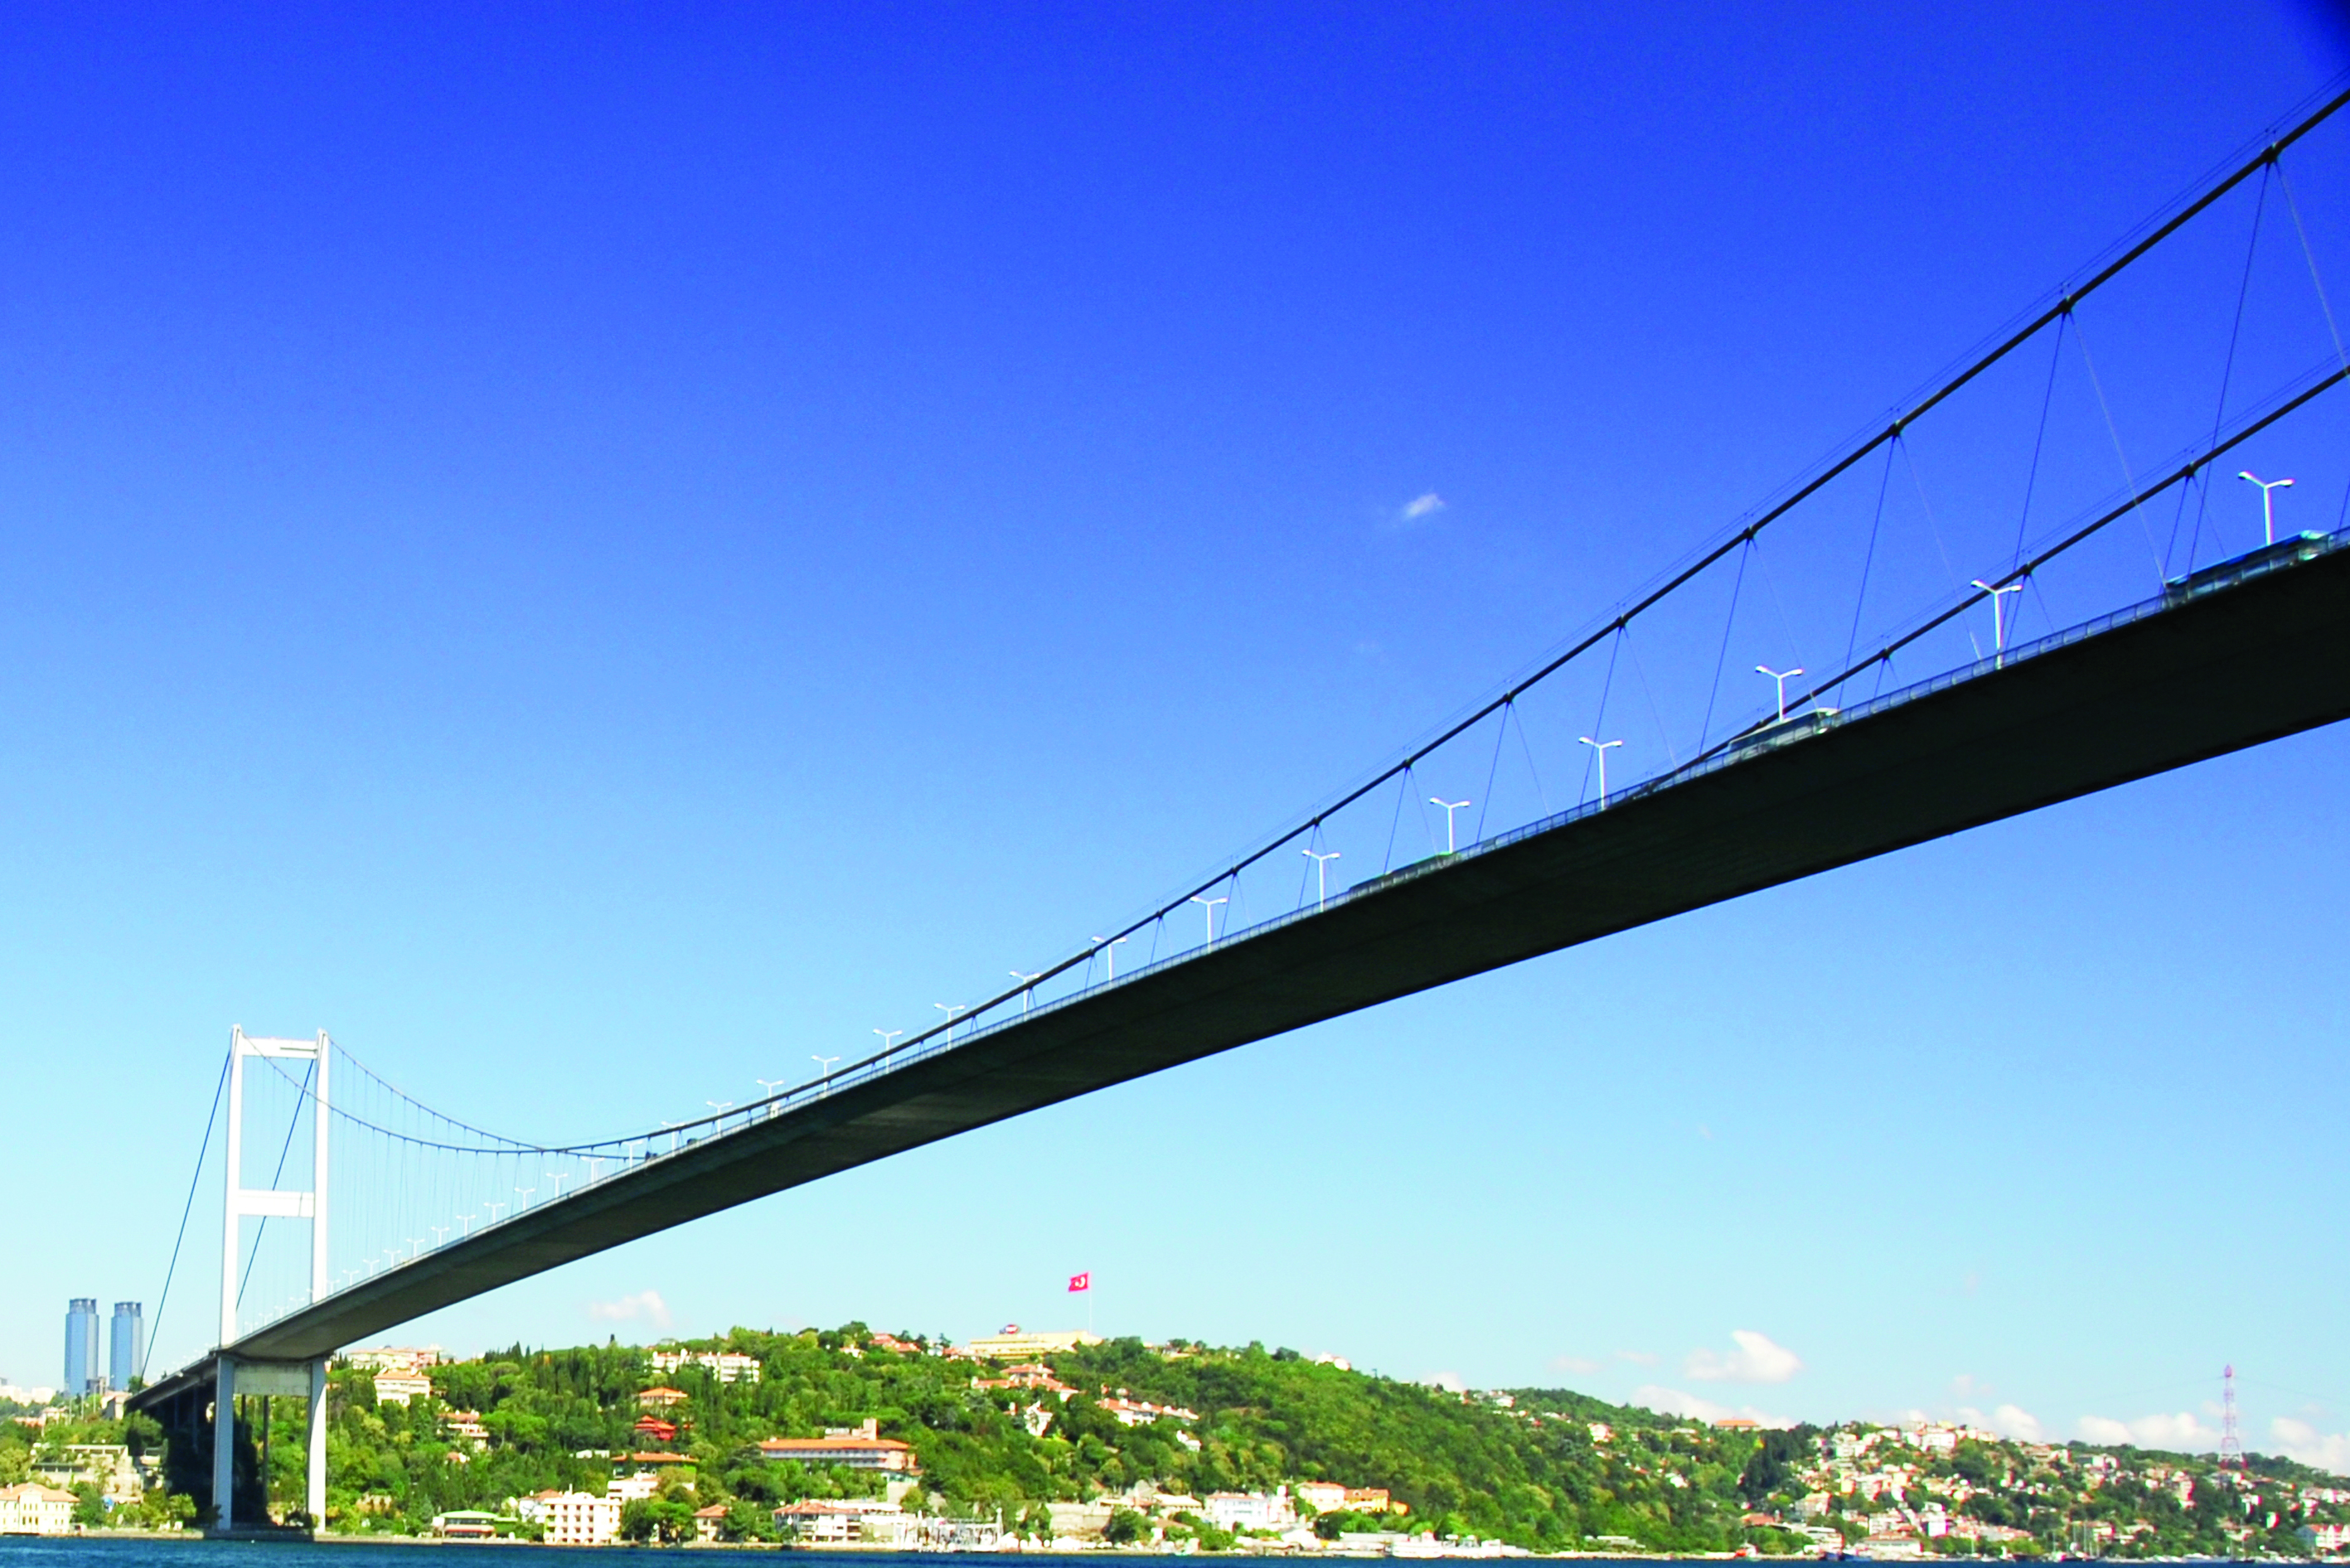 جسر تركي يستحضر الآلام تاريخية